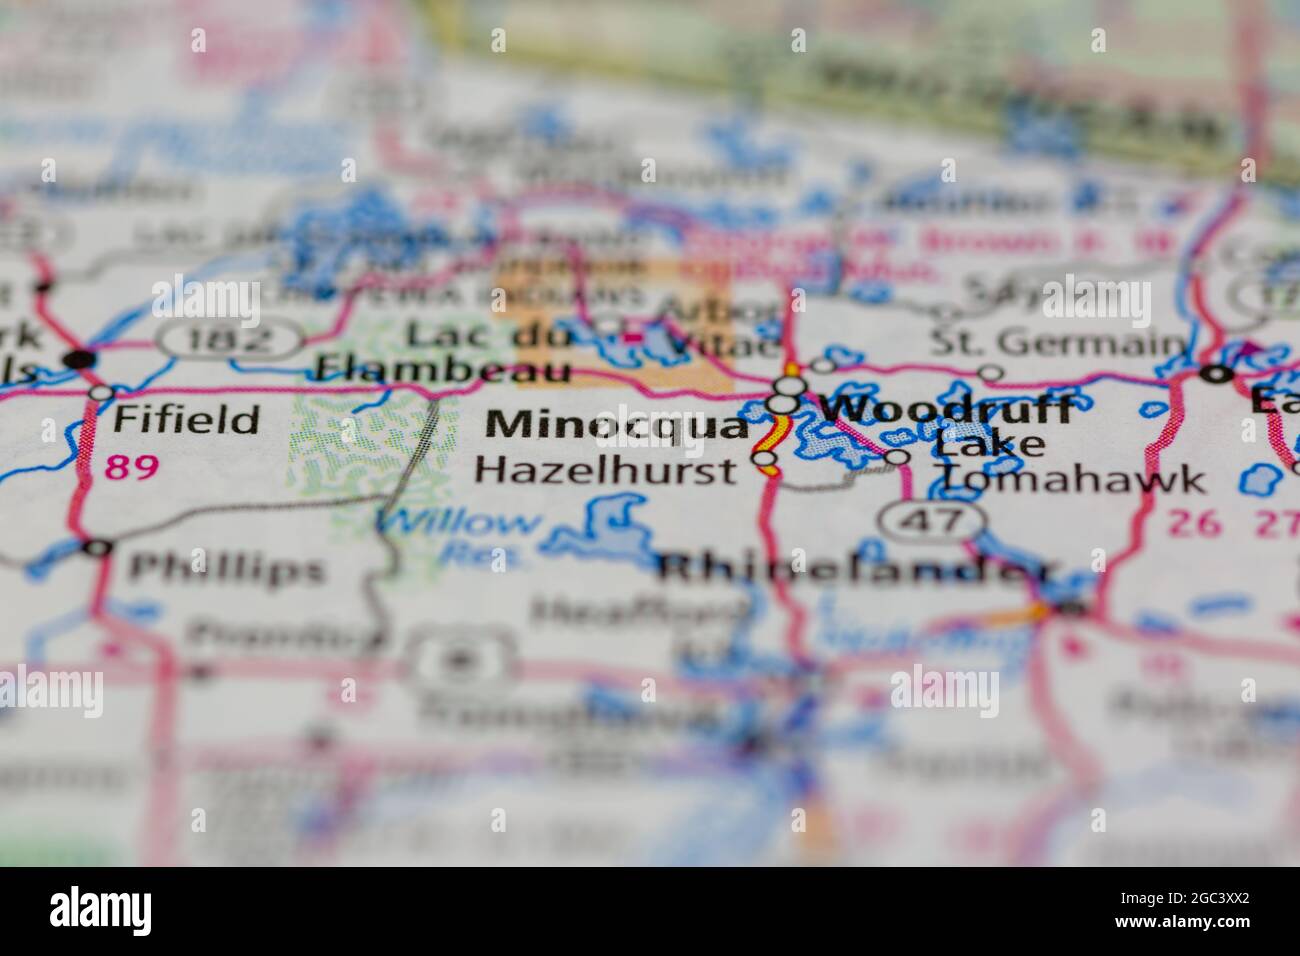 Minocqua Wisconsin USA sur une carte routière ou une carte de la géographie Banque D'Images